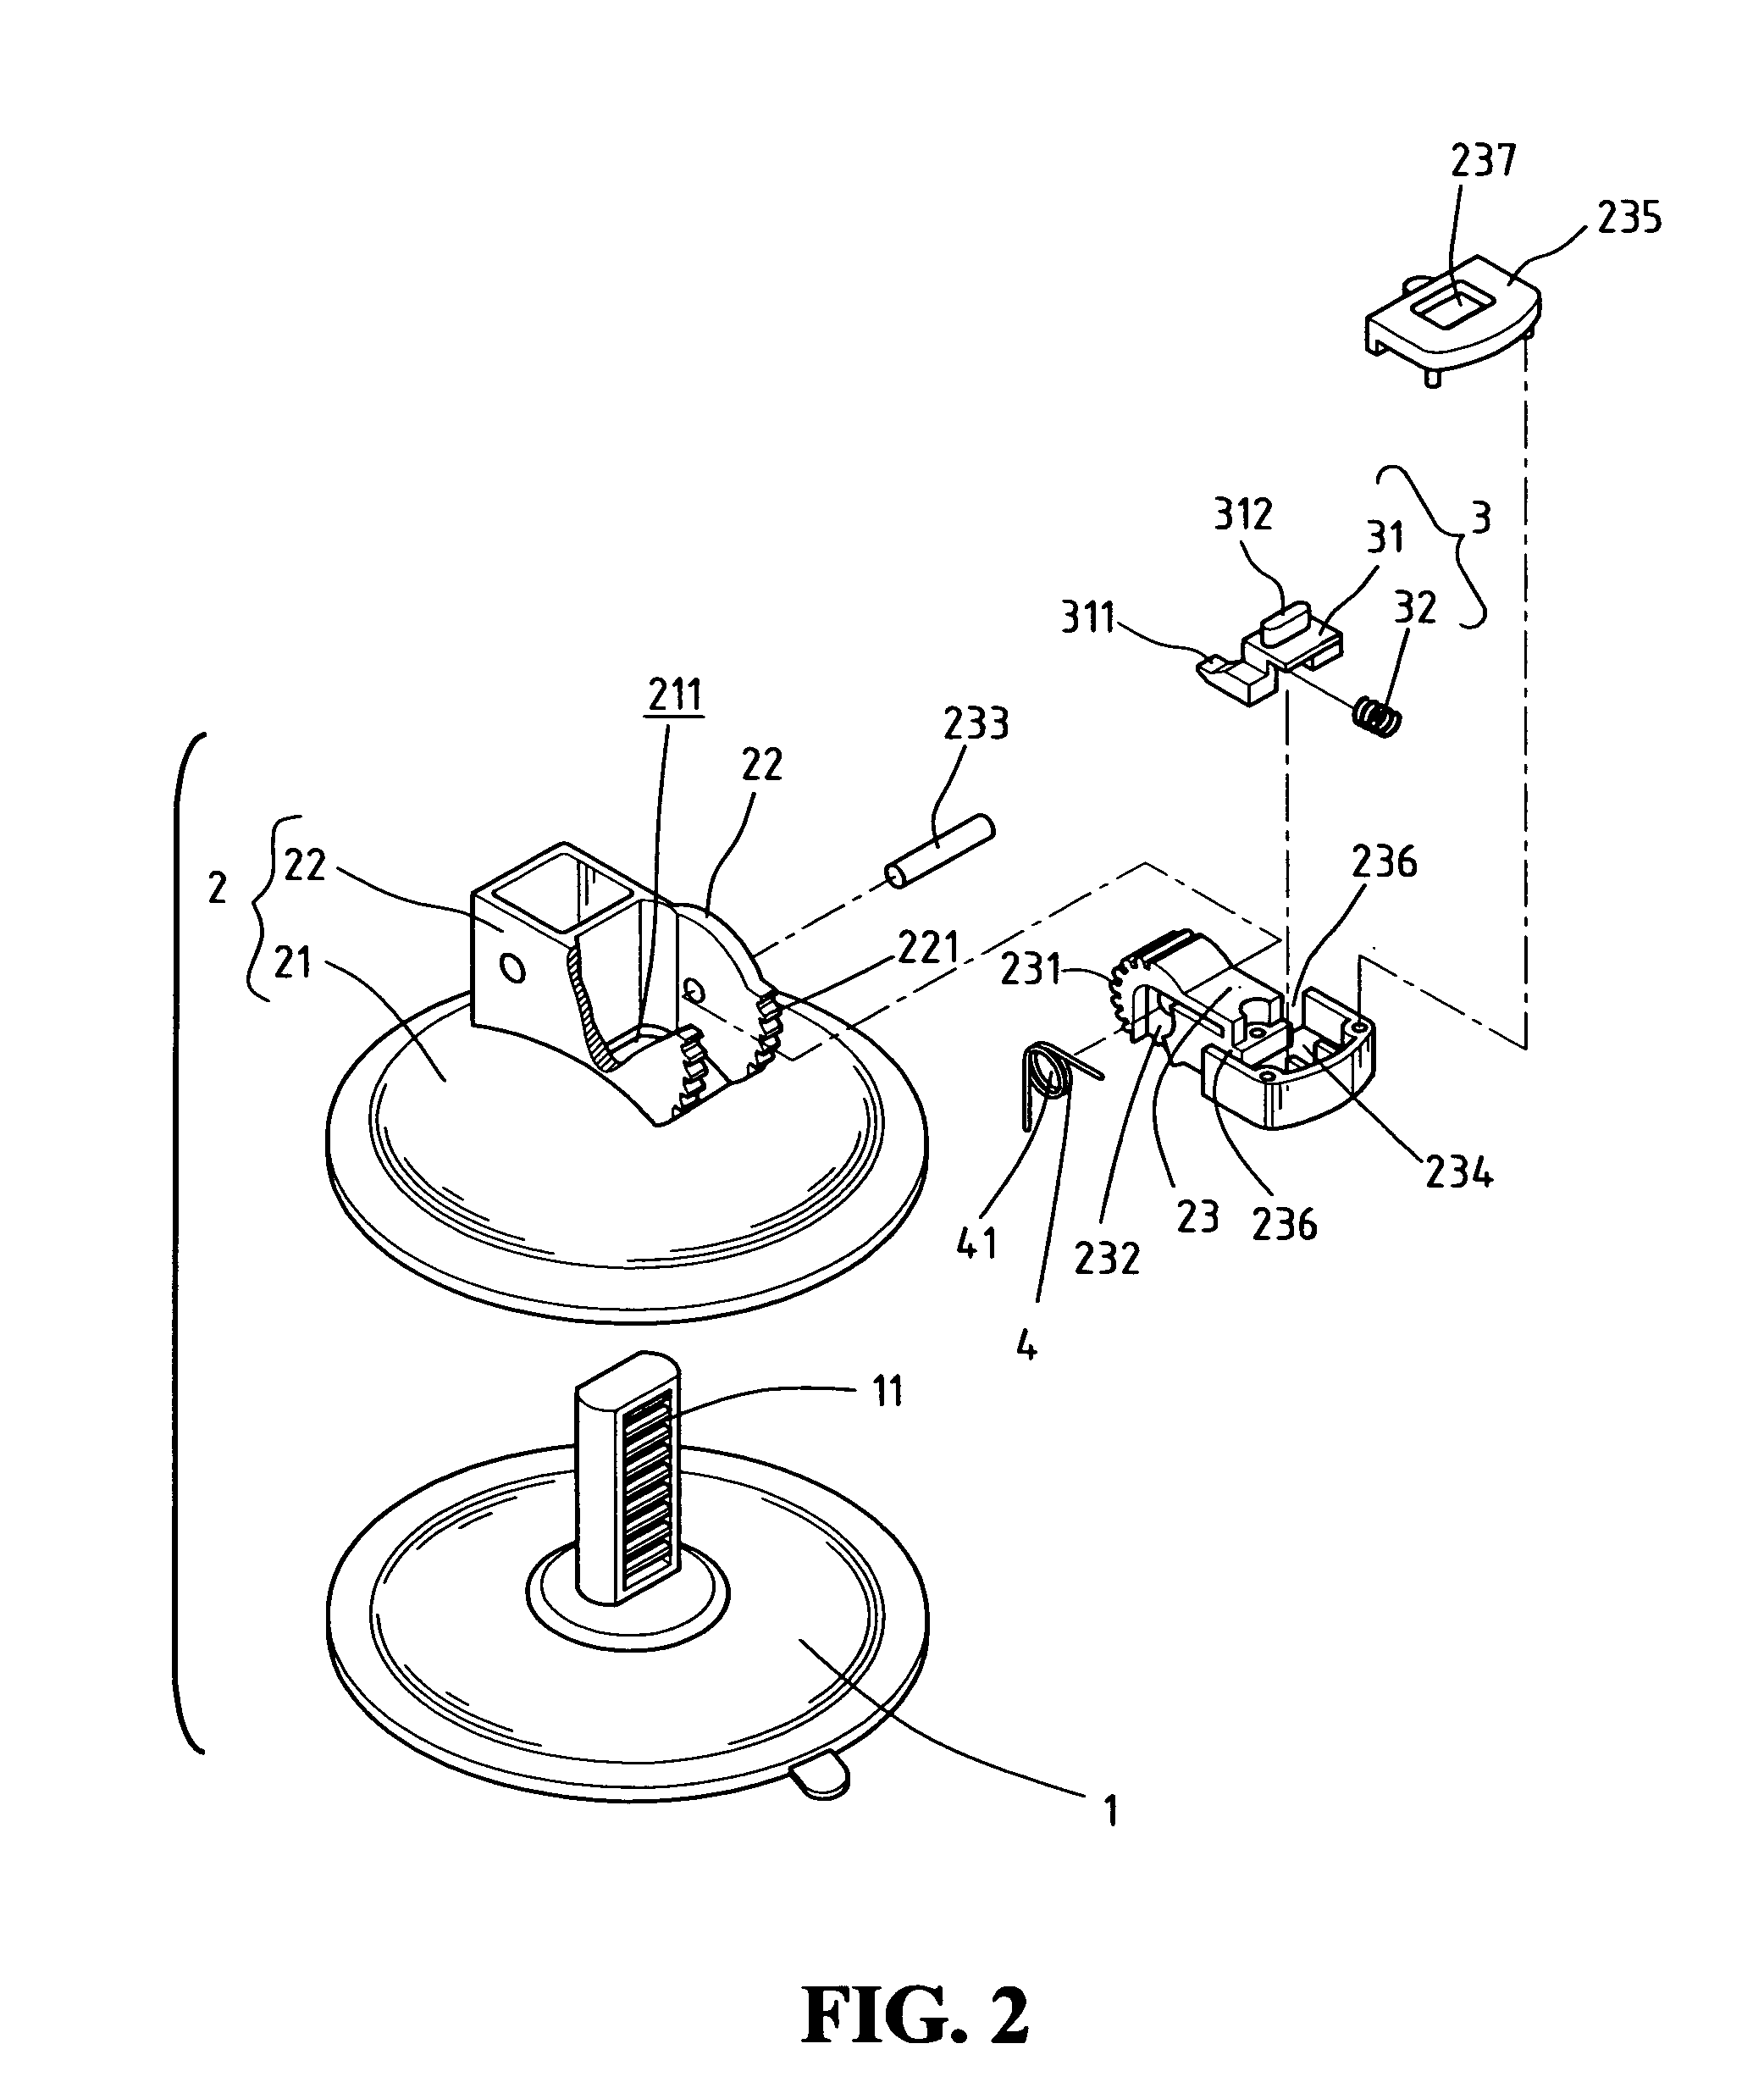 Vacuum suction apparatus